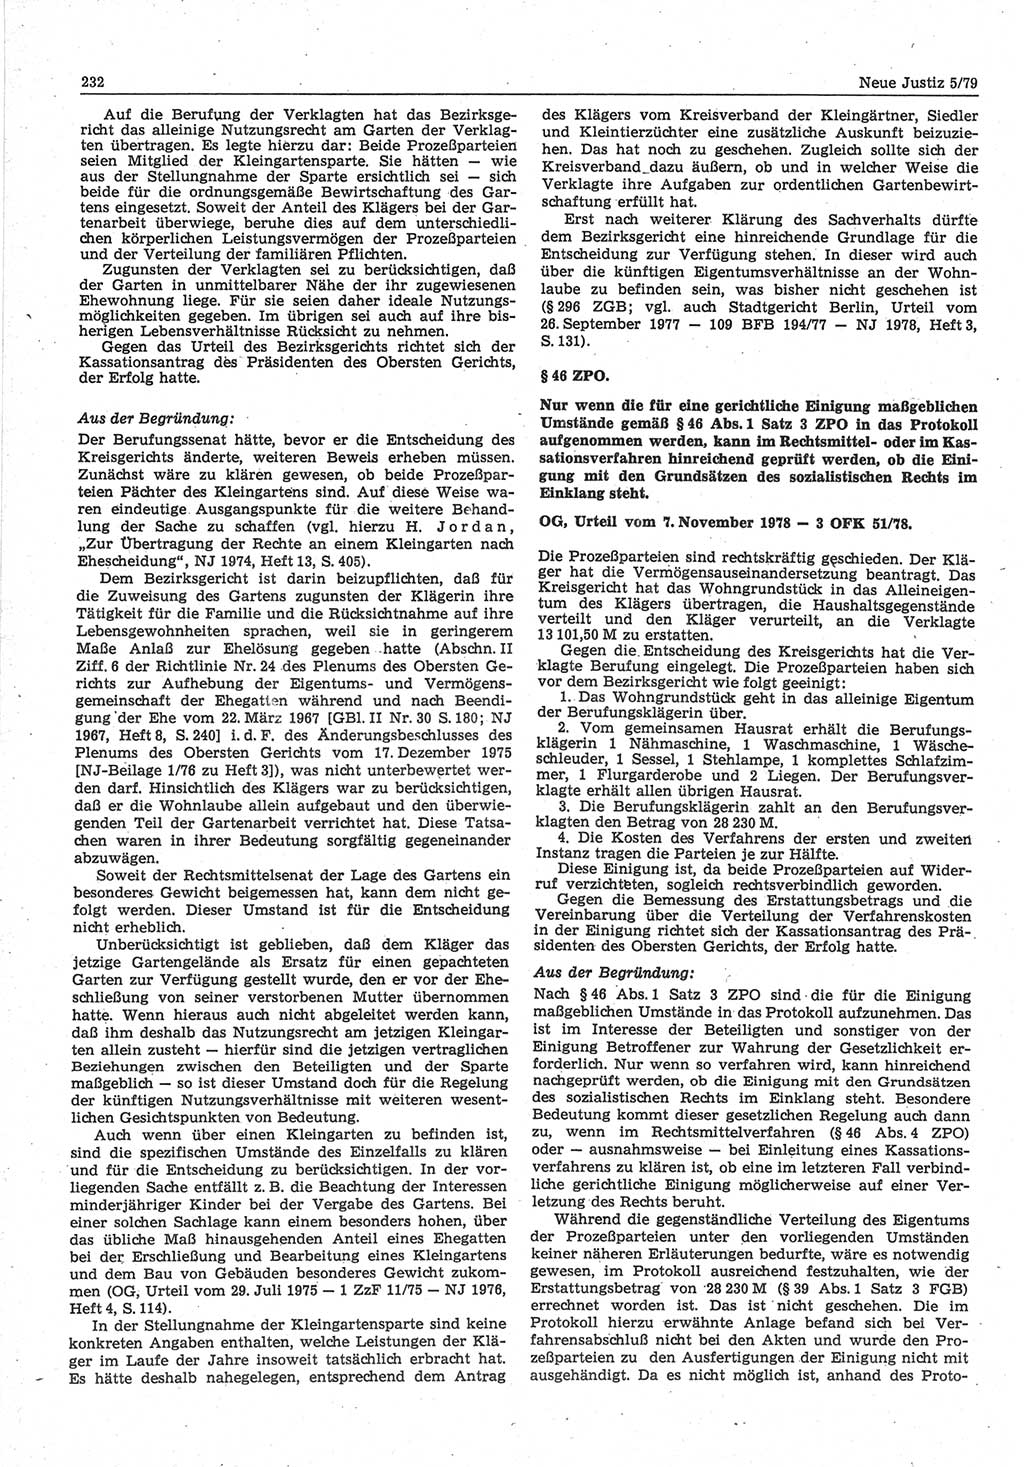 Neue Justiz (NJ), Zeitschrift für sozialistisches Recht und Gesetzlichkeit [Deutsche Demokratische Republik (DDR)], 33. Jahrgang 1979, Seite 232 (NJ DDR 1979, S. 232)